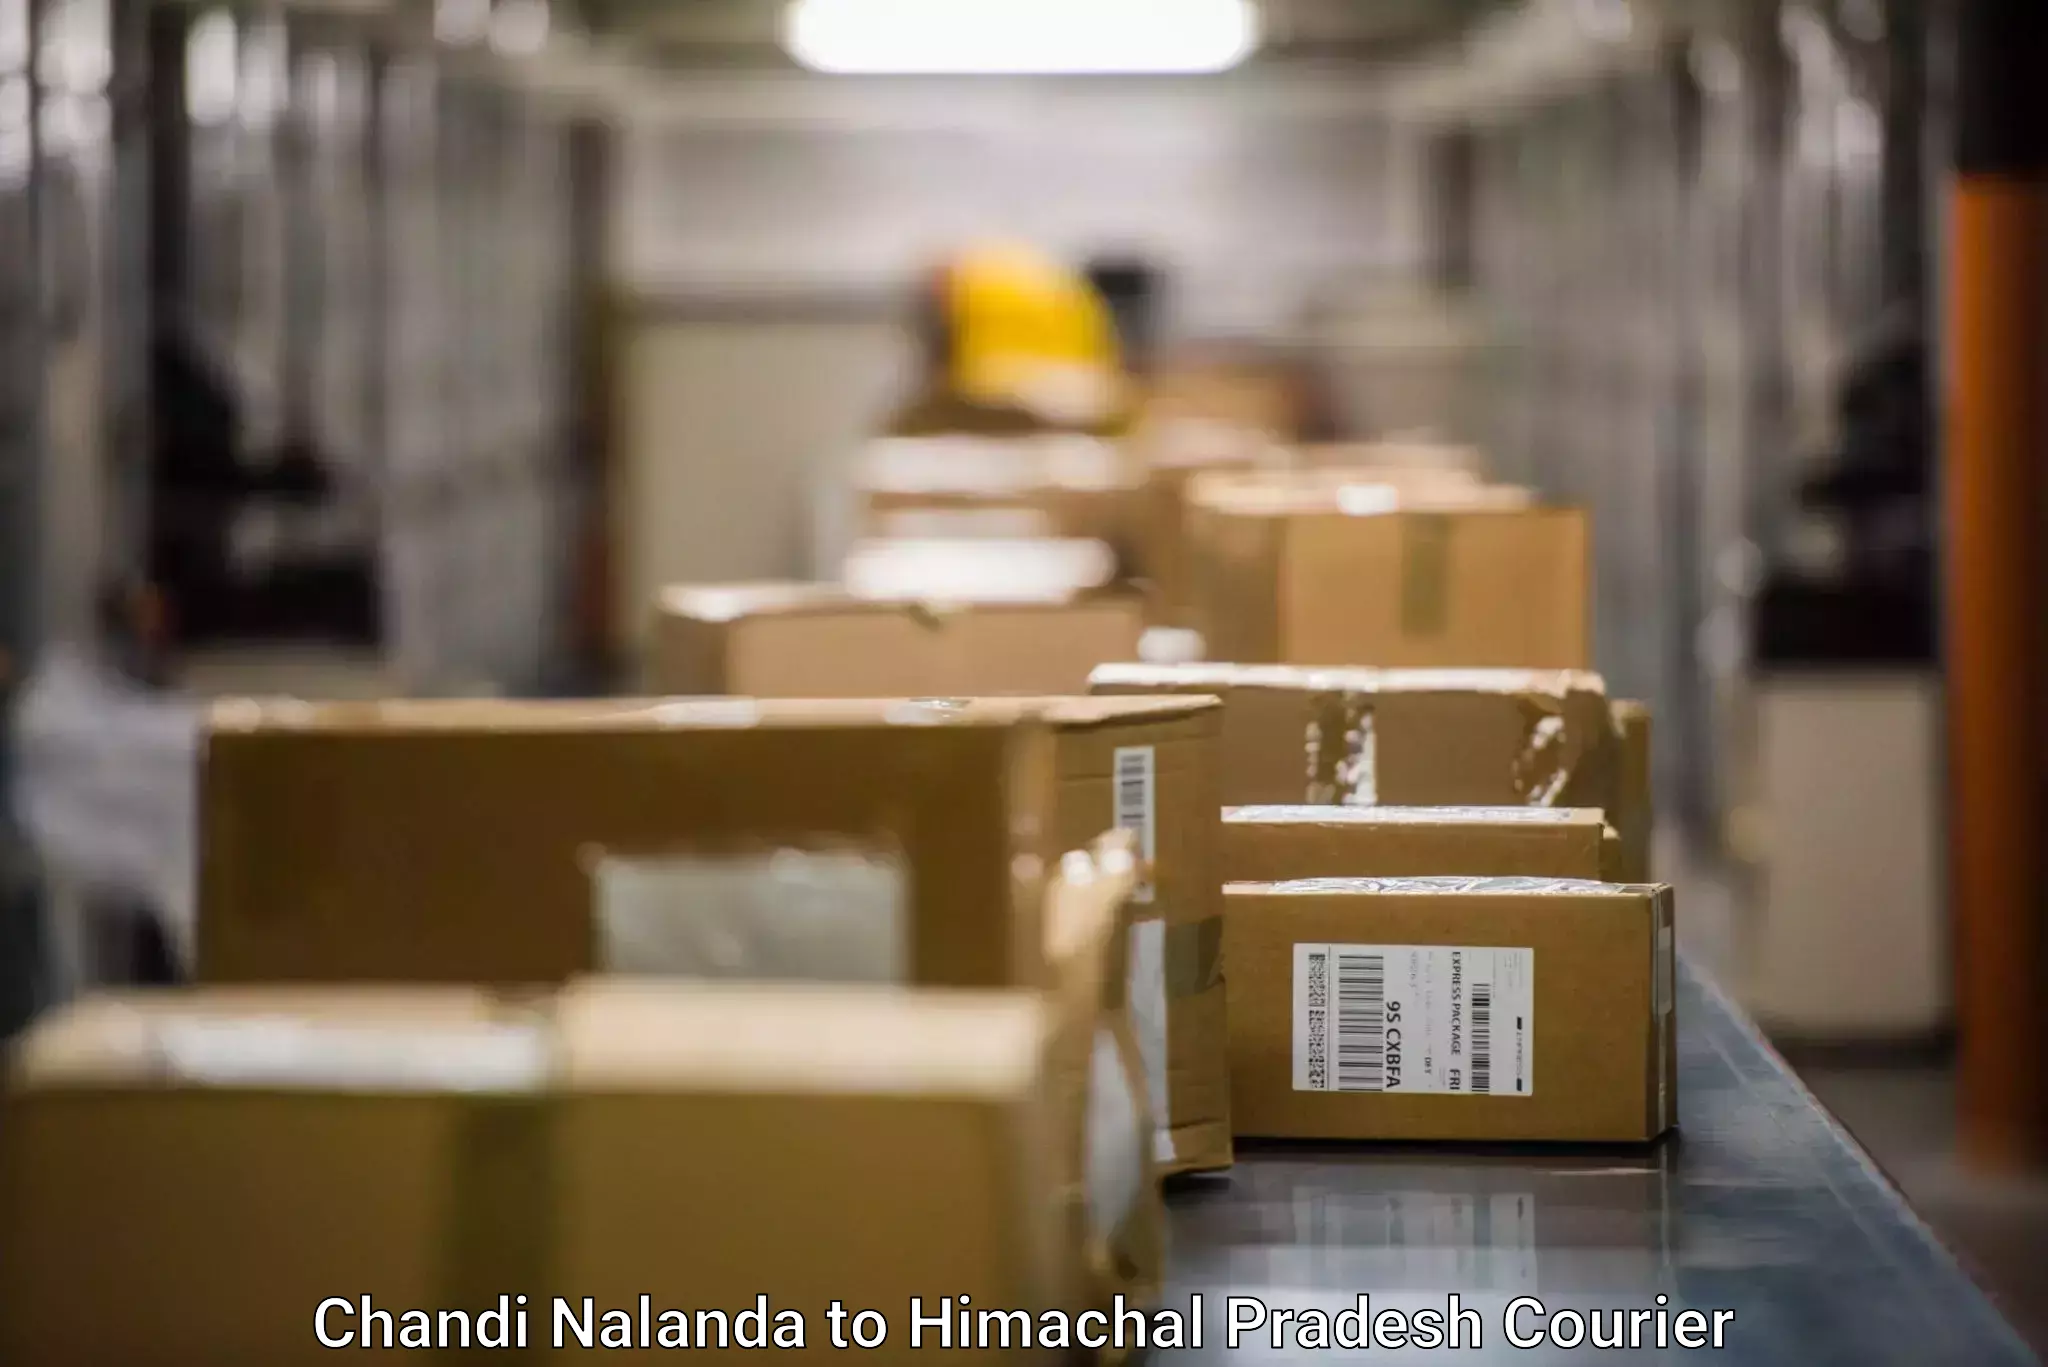 State-of-the-art courier technology Chandi Nalanda to Chamba